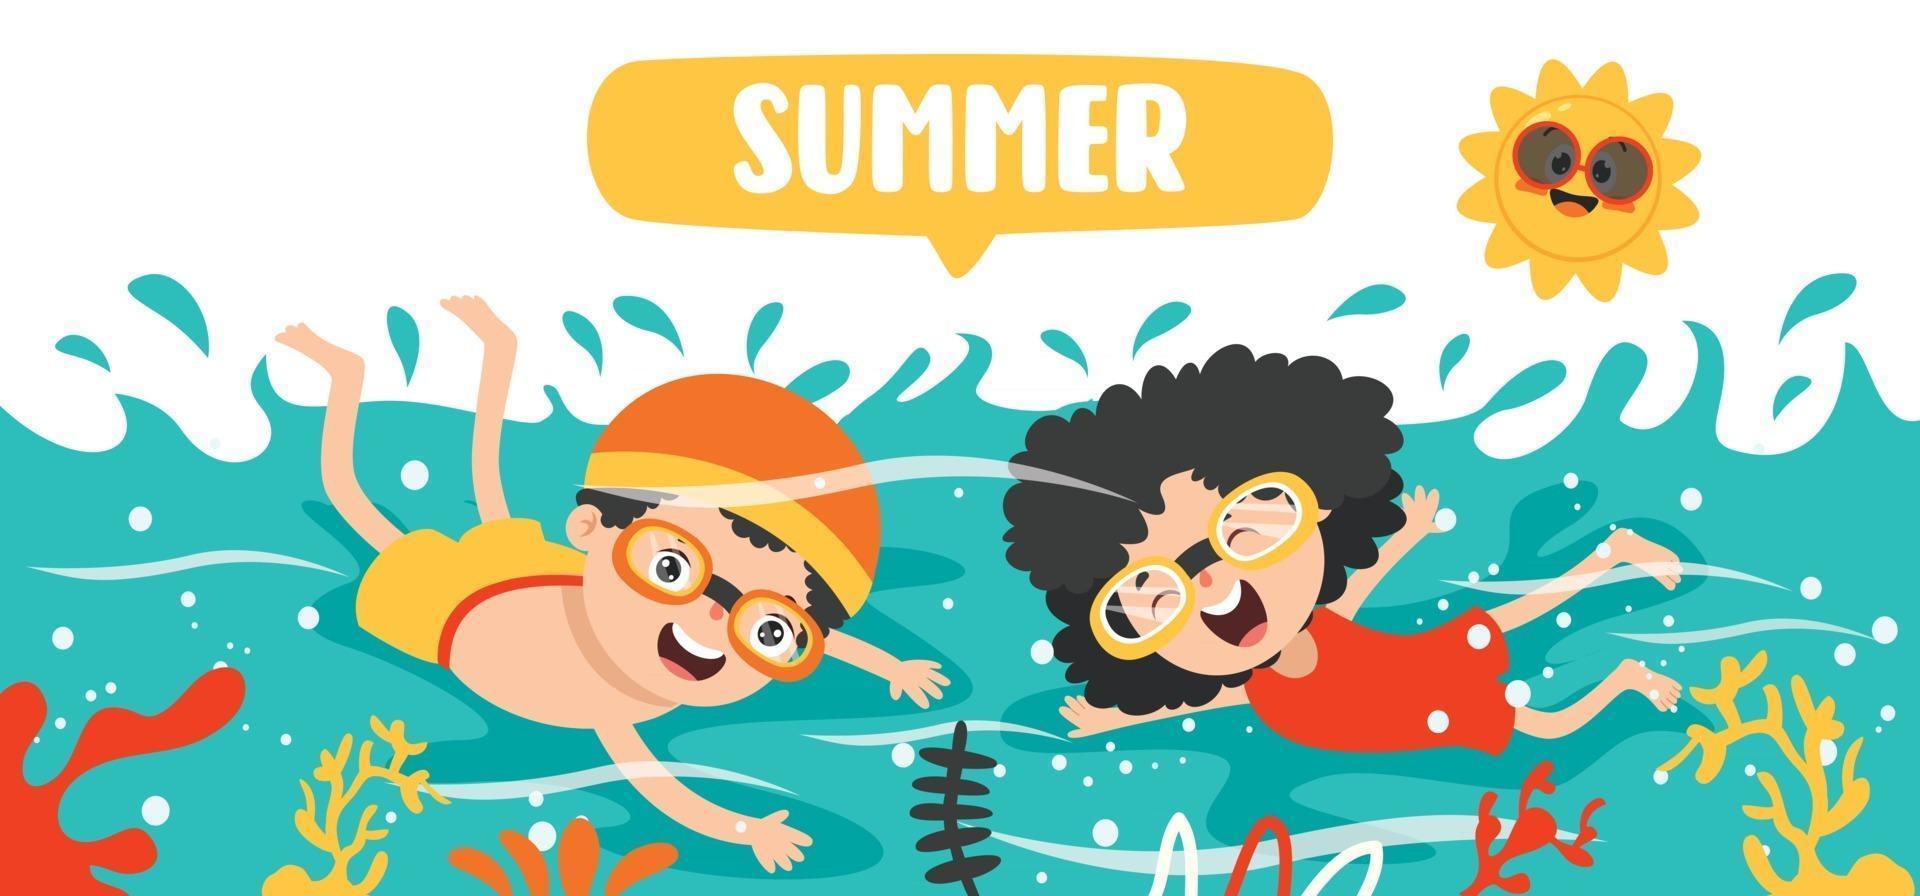 bannière d'été plat avec personnage de dessin animé vecteur